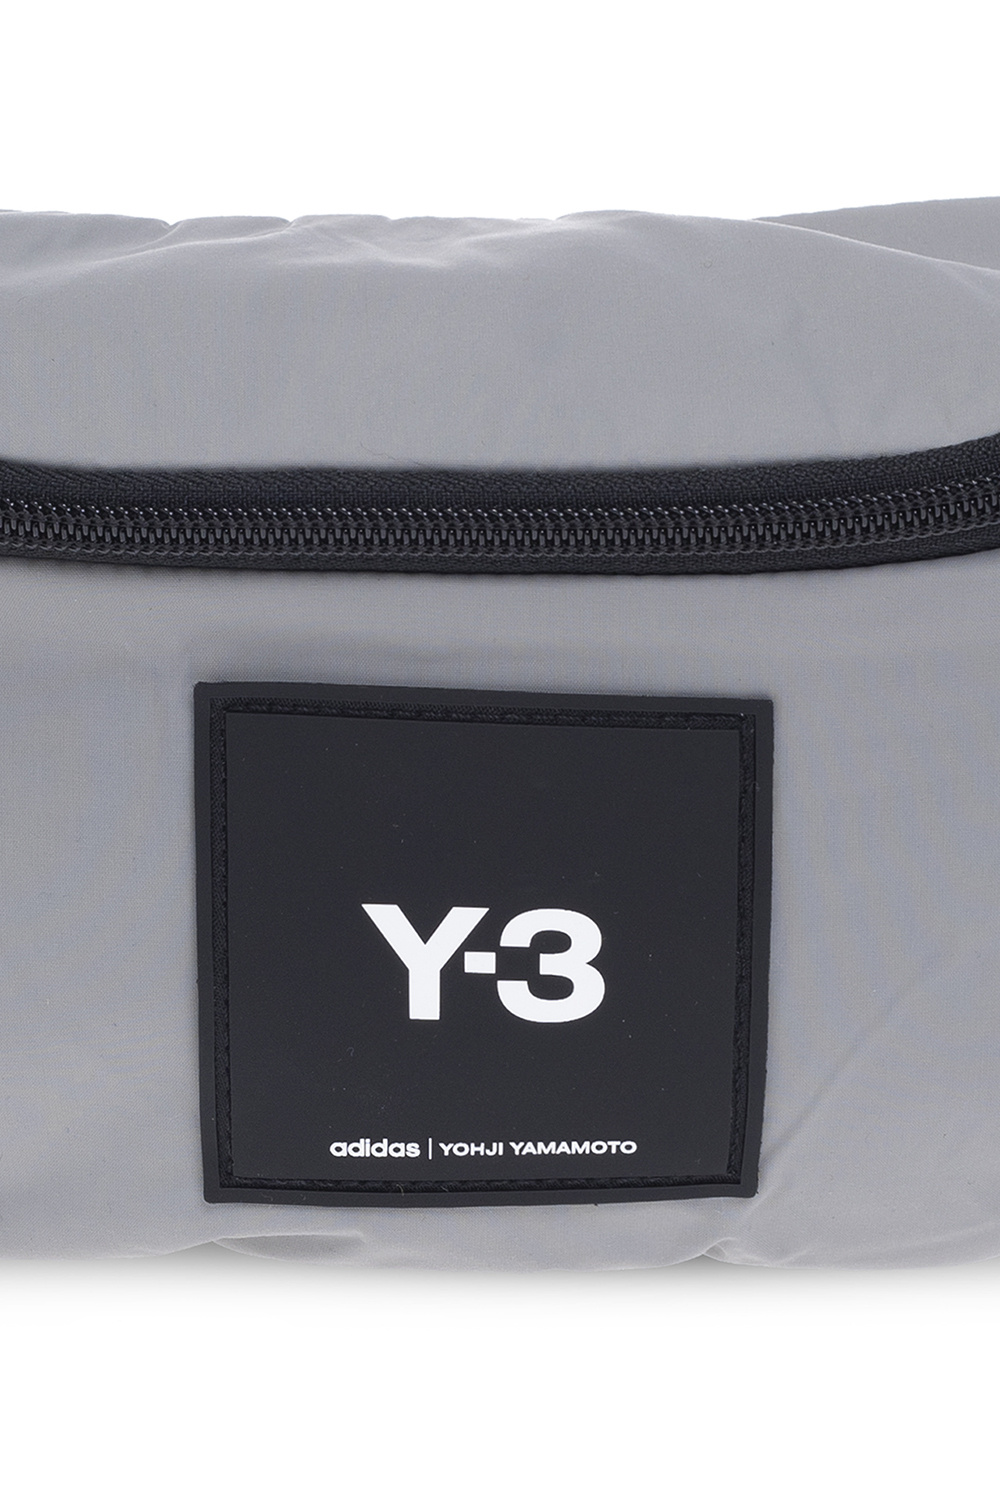 3 Yohji Yamamoto - Elisabetta Franchi interwoven leather chain